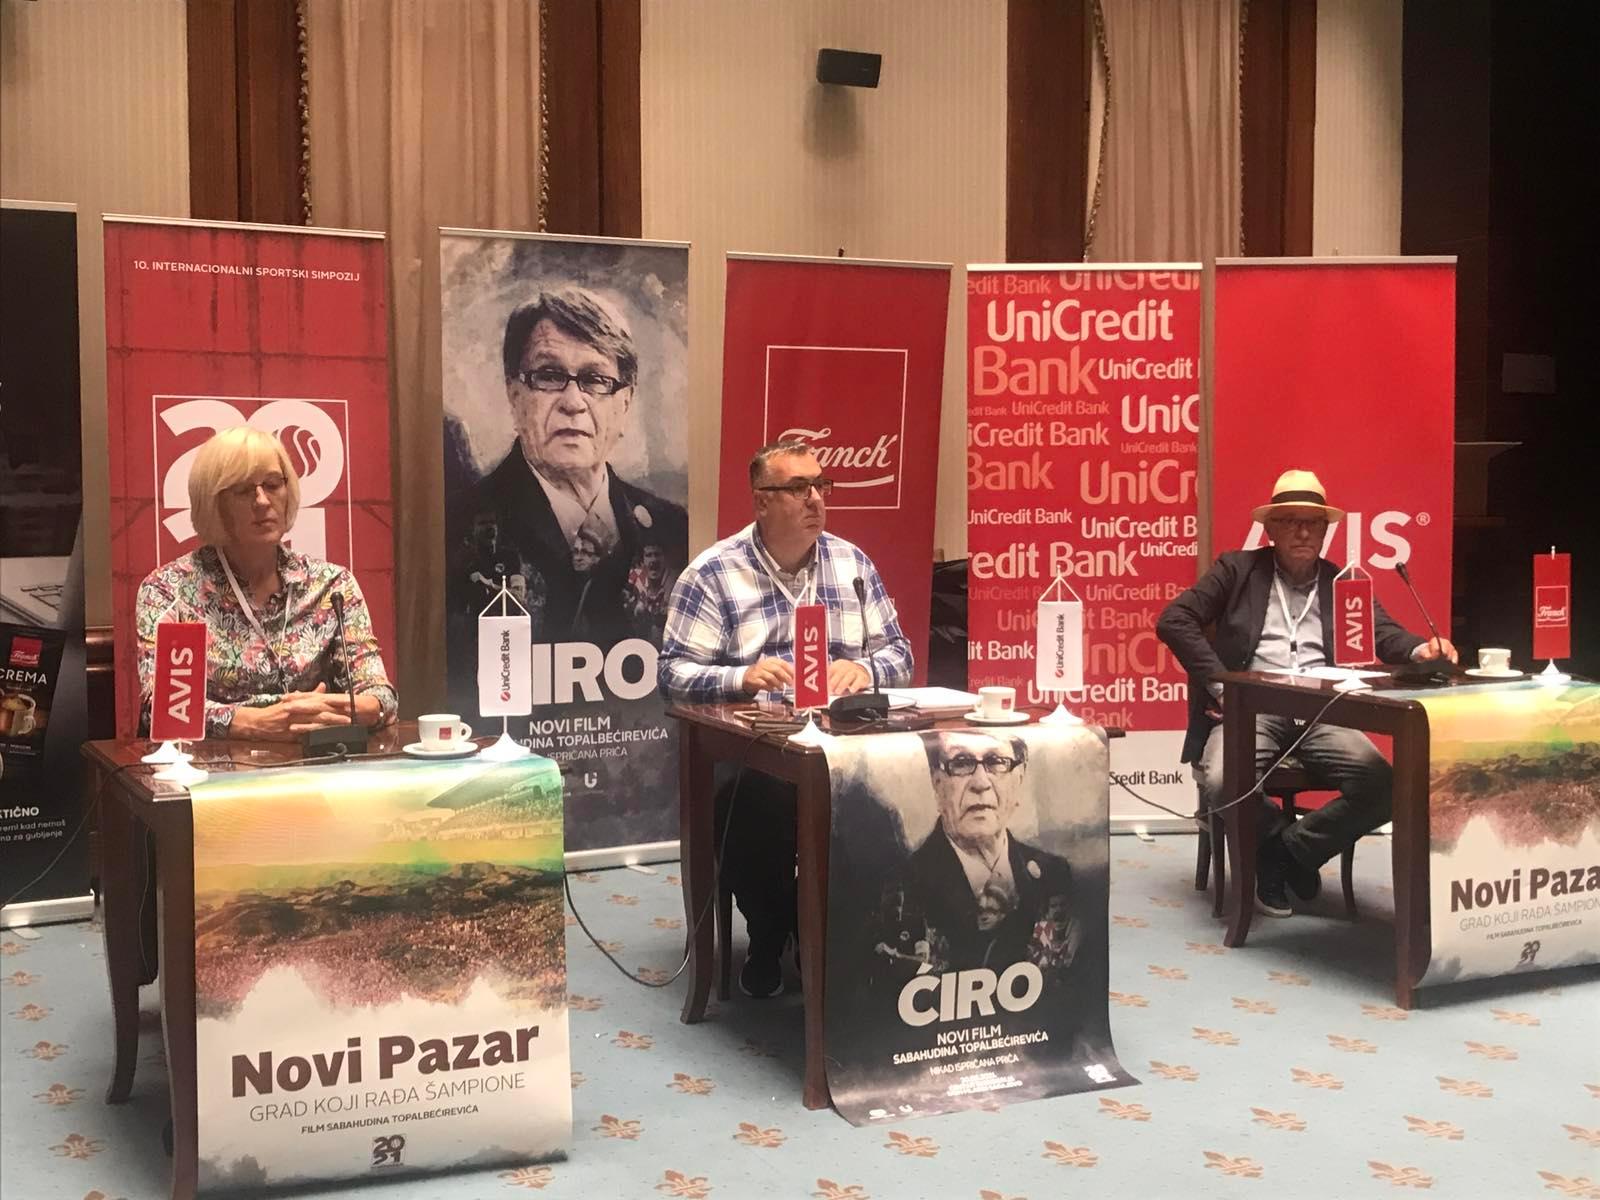 Topalbećirević: Publika će sutra na Simposaru gledati emotivni film o Ćiri Blaževiću